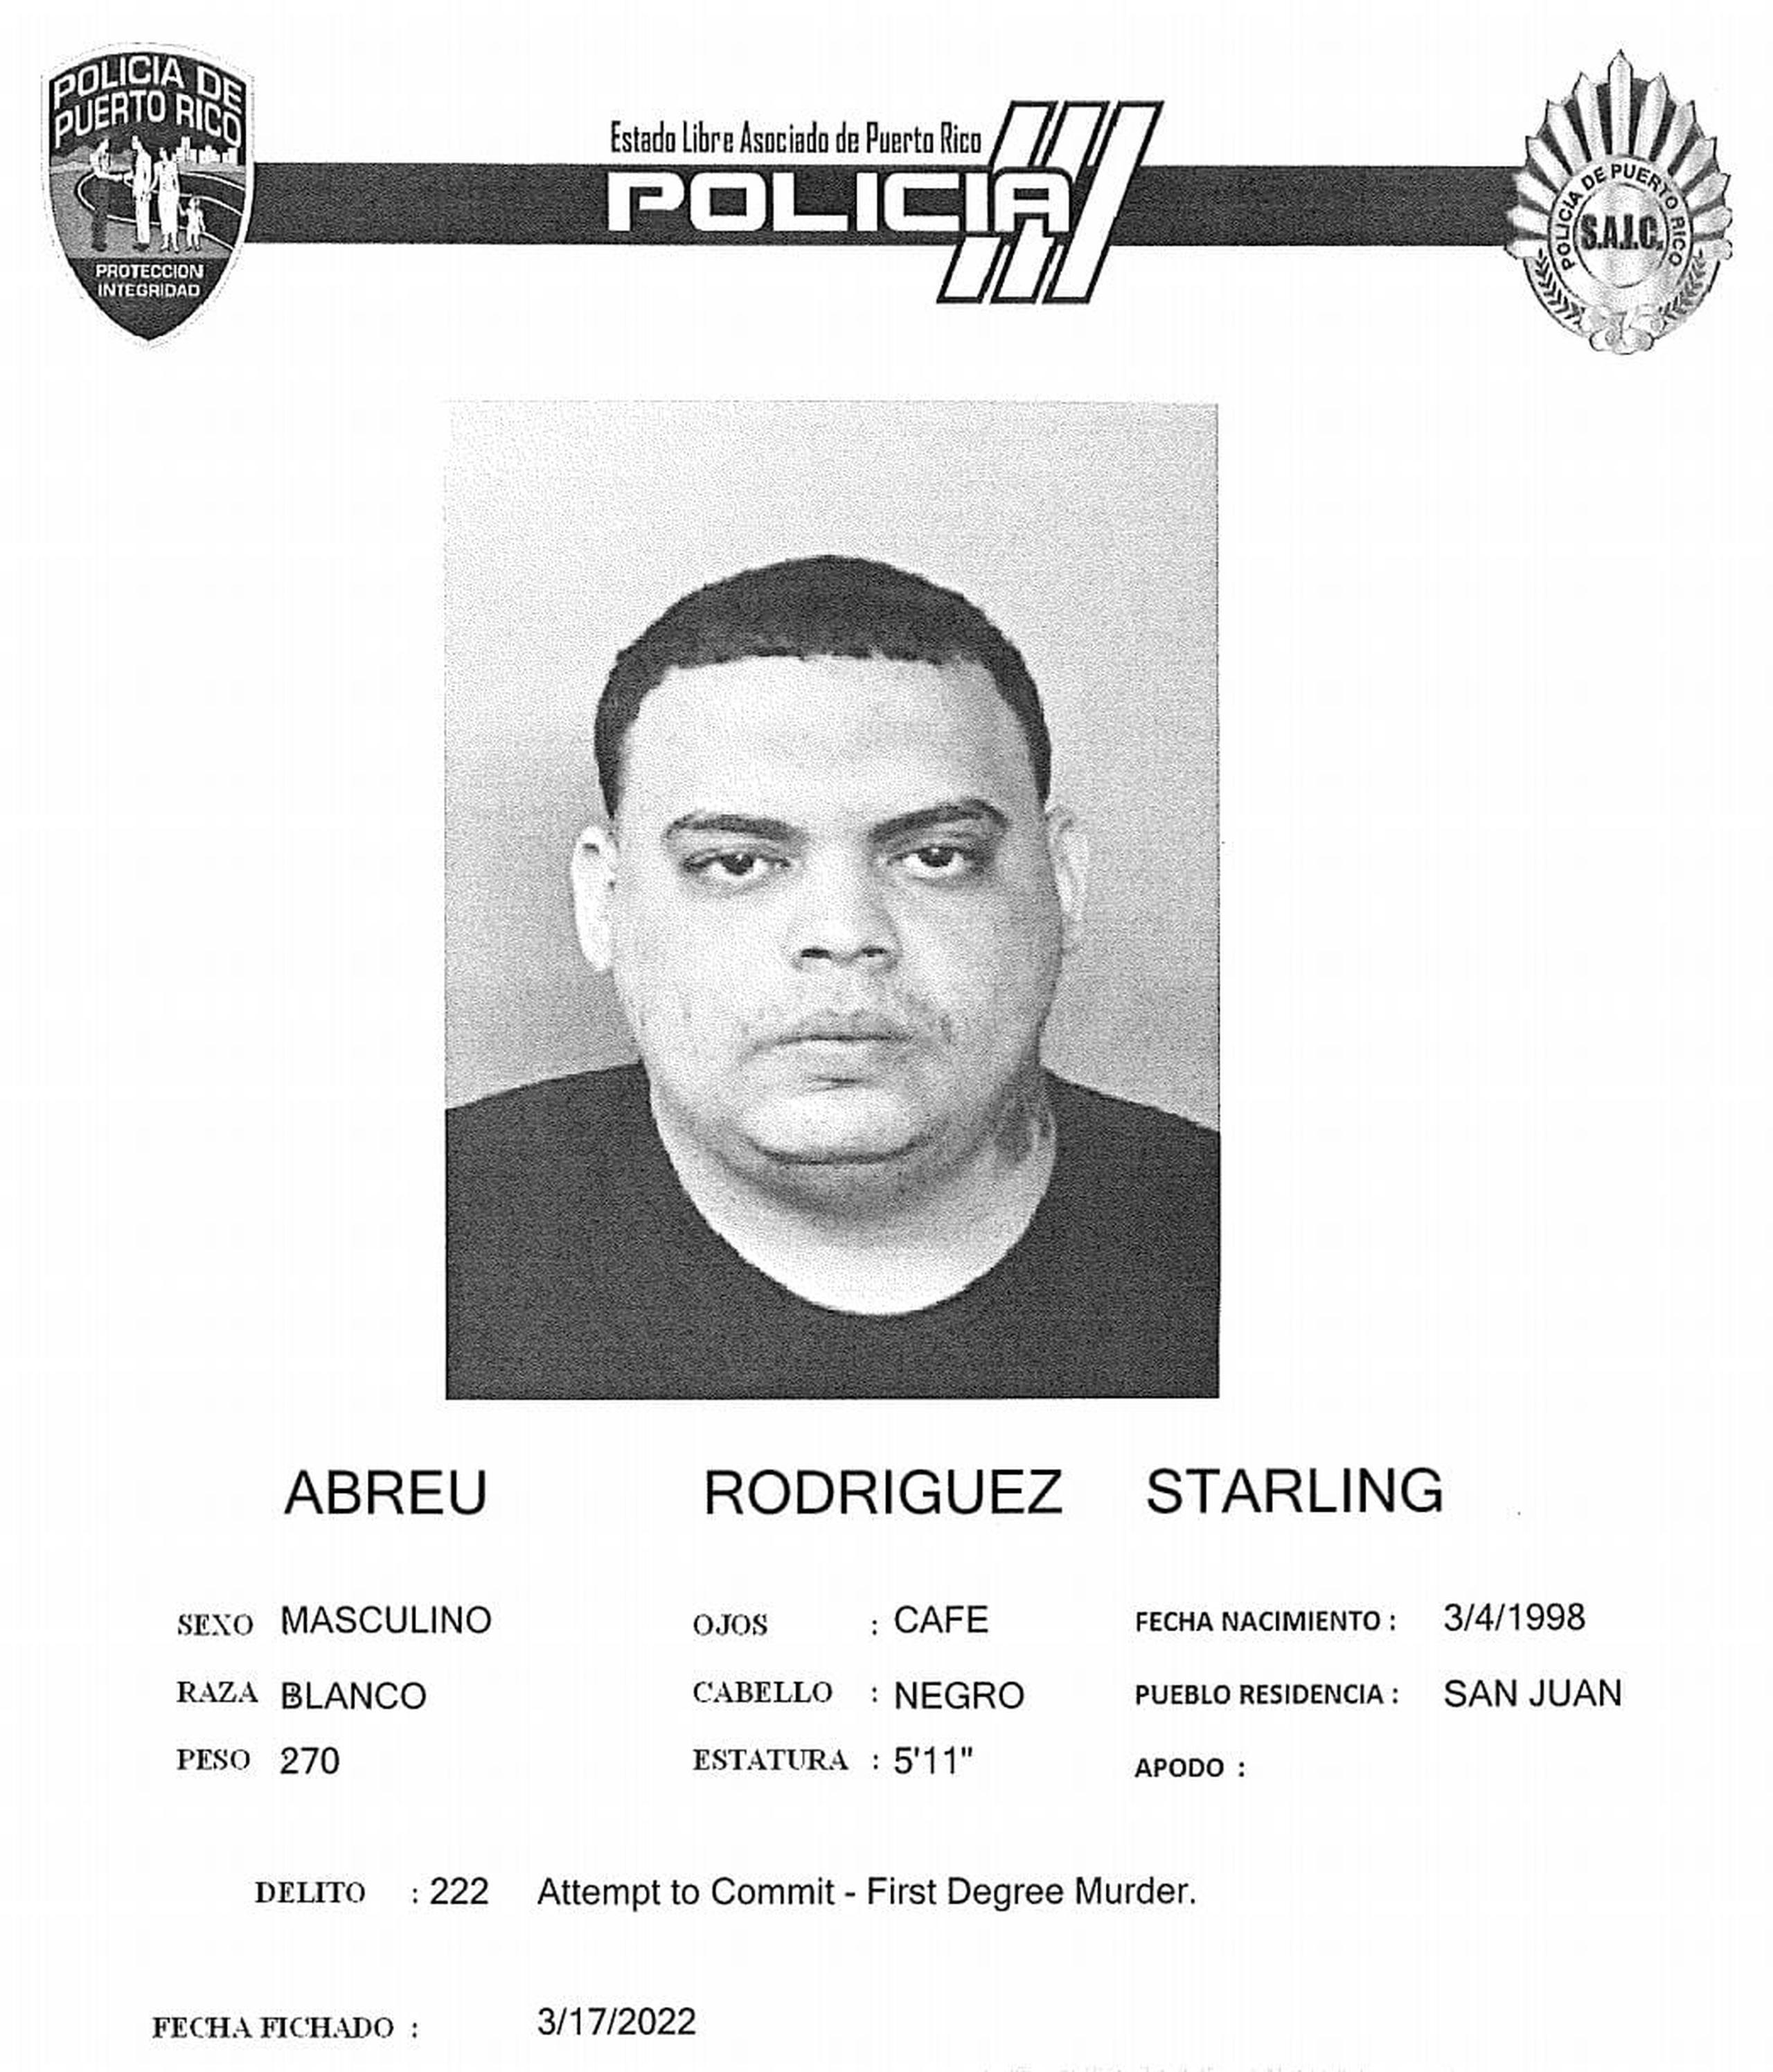 El confinado Starling Abreu Rodríguez fue encontrado muerto en el baño de su celda en el complejo correccional de Bayamón.